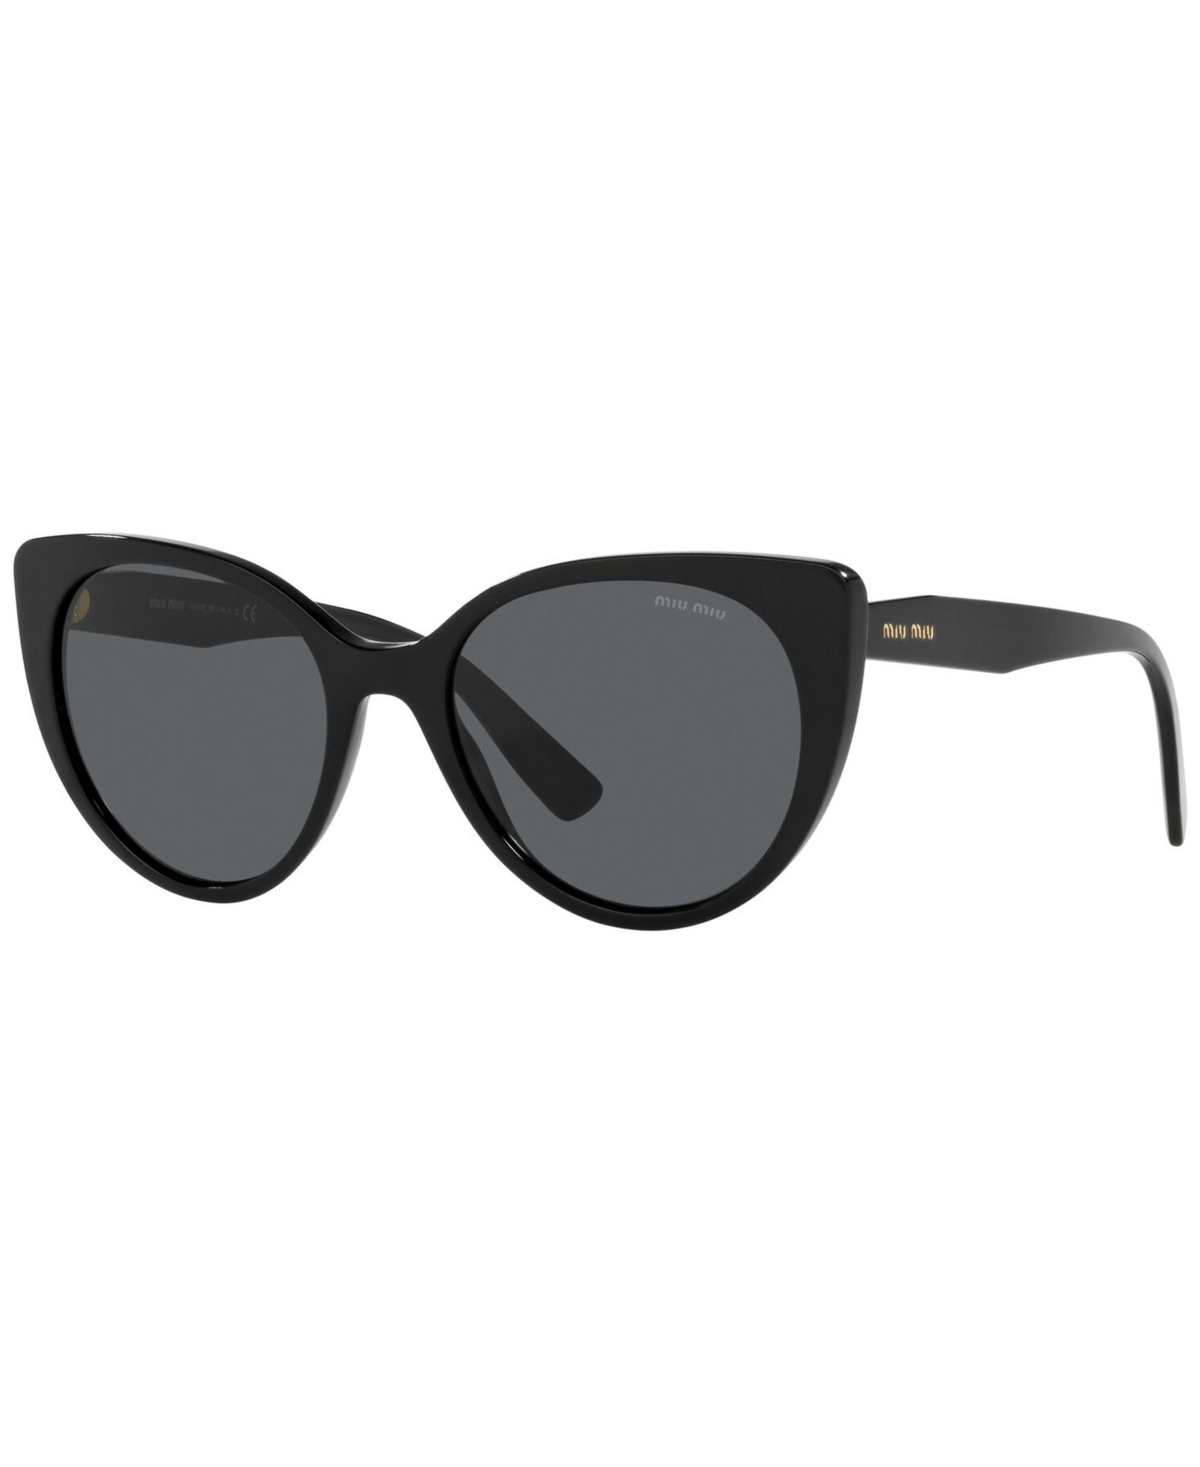 Miu Miu Women's Sunglasses, Mu 04xs In Black,dark Grey